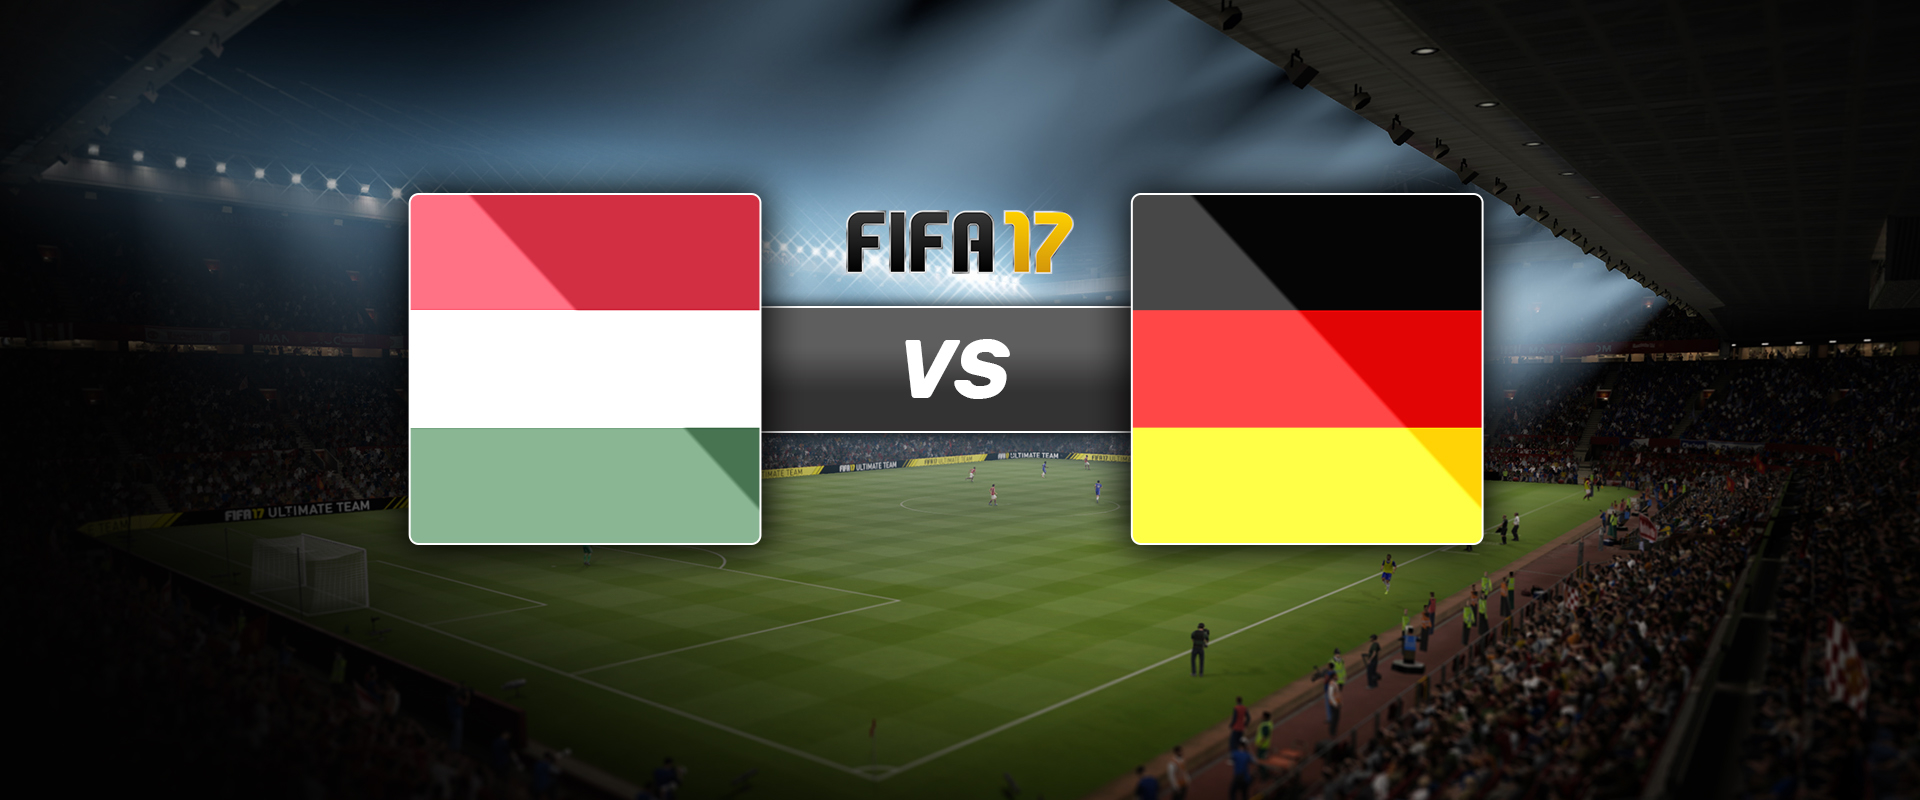 Menetel a FIFA válogatott: így nyertek a magyarok a németek ellen